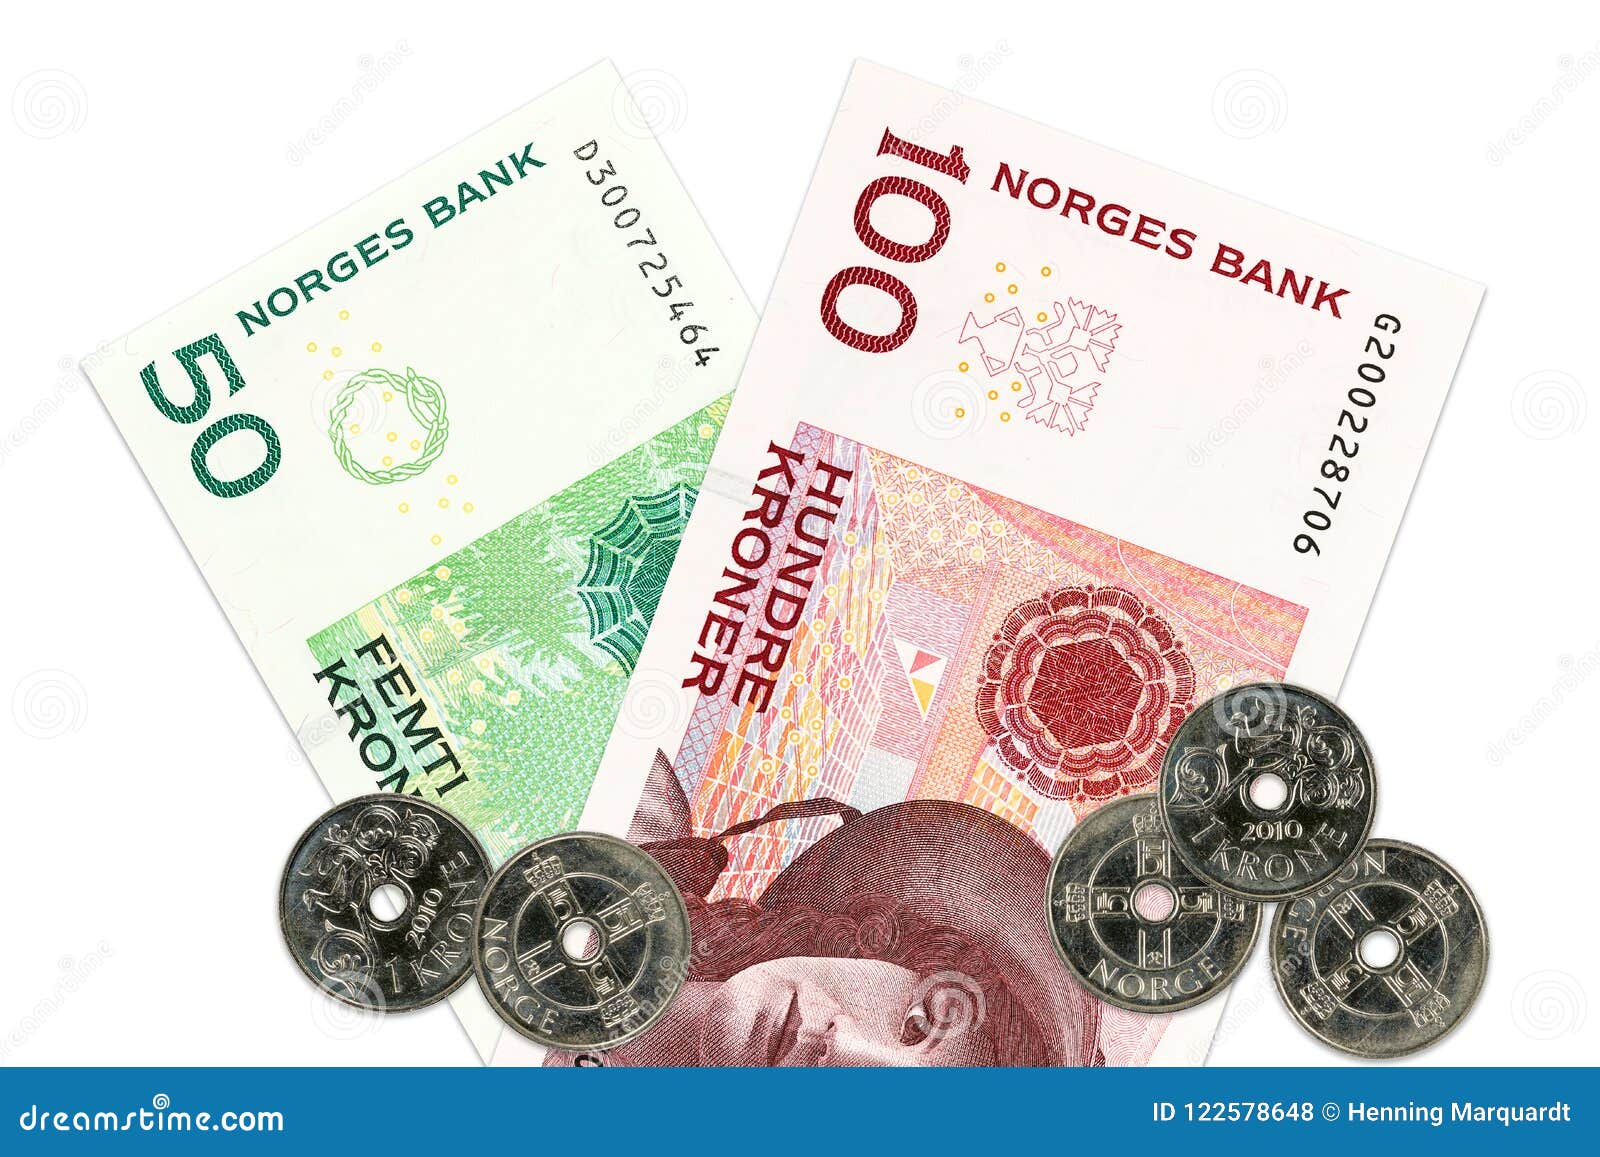 挪威克朗纸币和硬币，挪威 库存照片. 图片 包括有 横幅提供资金的, 货币, 财务, 挪威, 度过, 银行 - 102270902